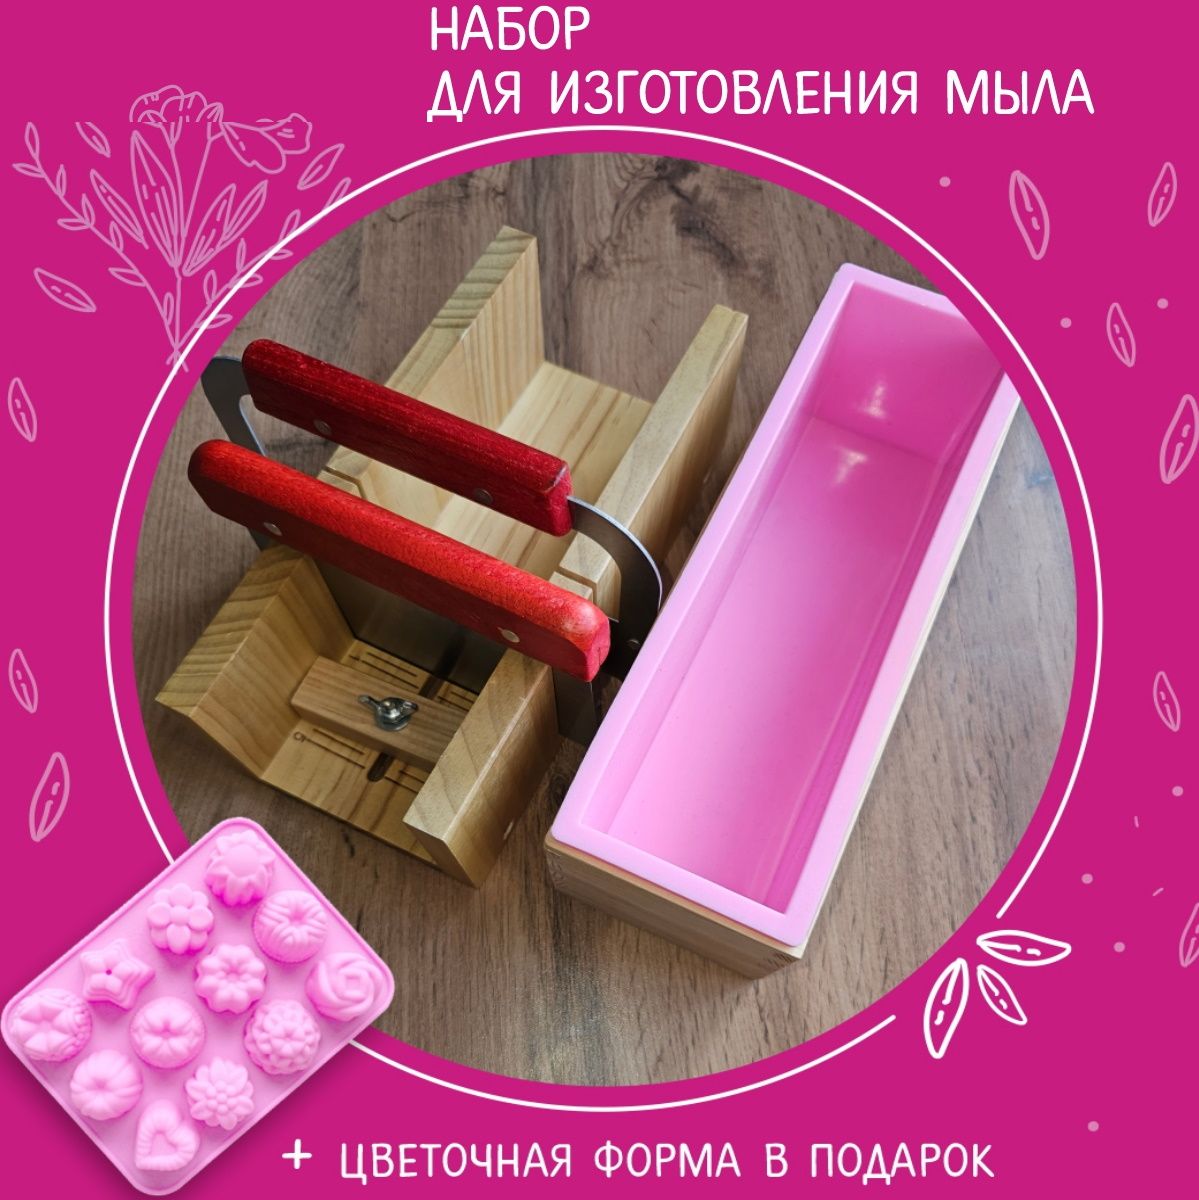 деревянные формы | Товары для мыловарения и домашней косметики EasySoap.com.ua